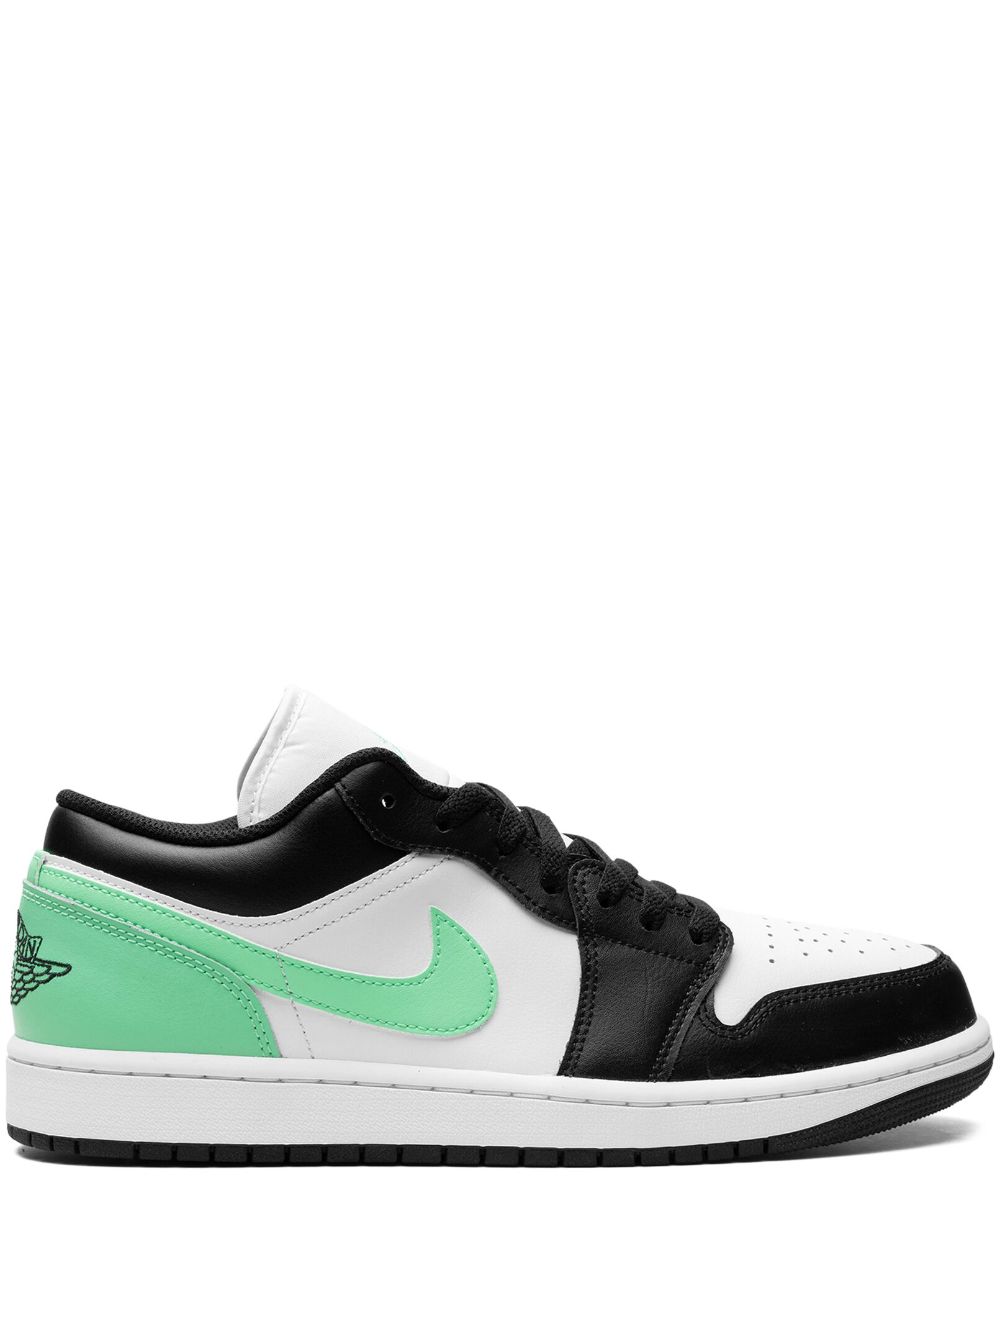 Image 1 of Jordan Air Jordan 1 Low "Green Glow" sneakers